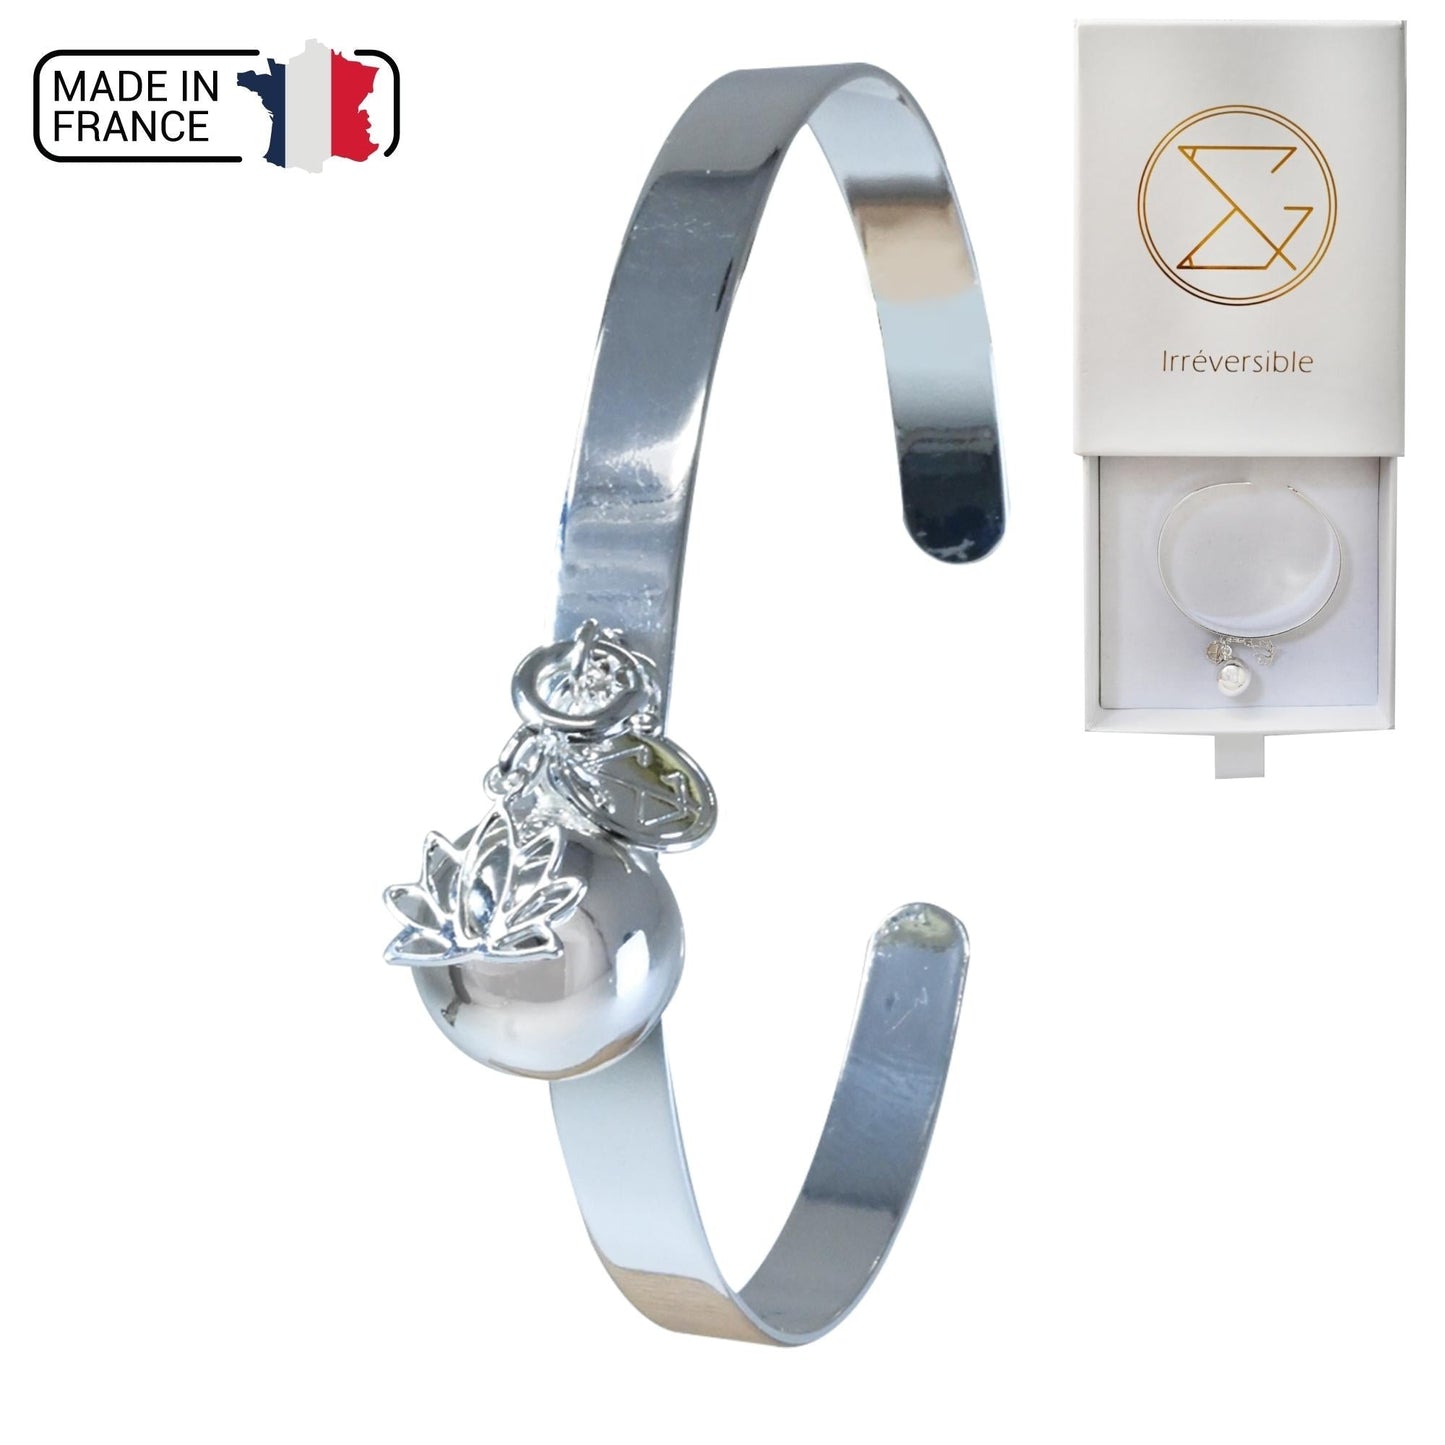 Bracelet Bola de Grossesse - Made In France - Camille Bracelet Bola 100% Plaqué Argent, Argent 10 Micron, Bille Bola, Bracelet, Adulte